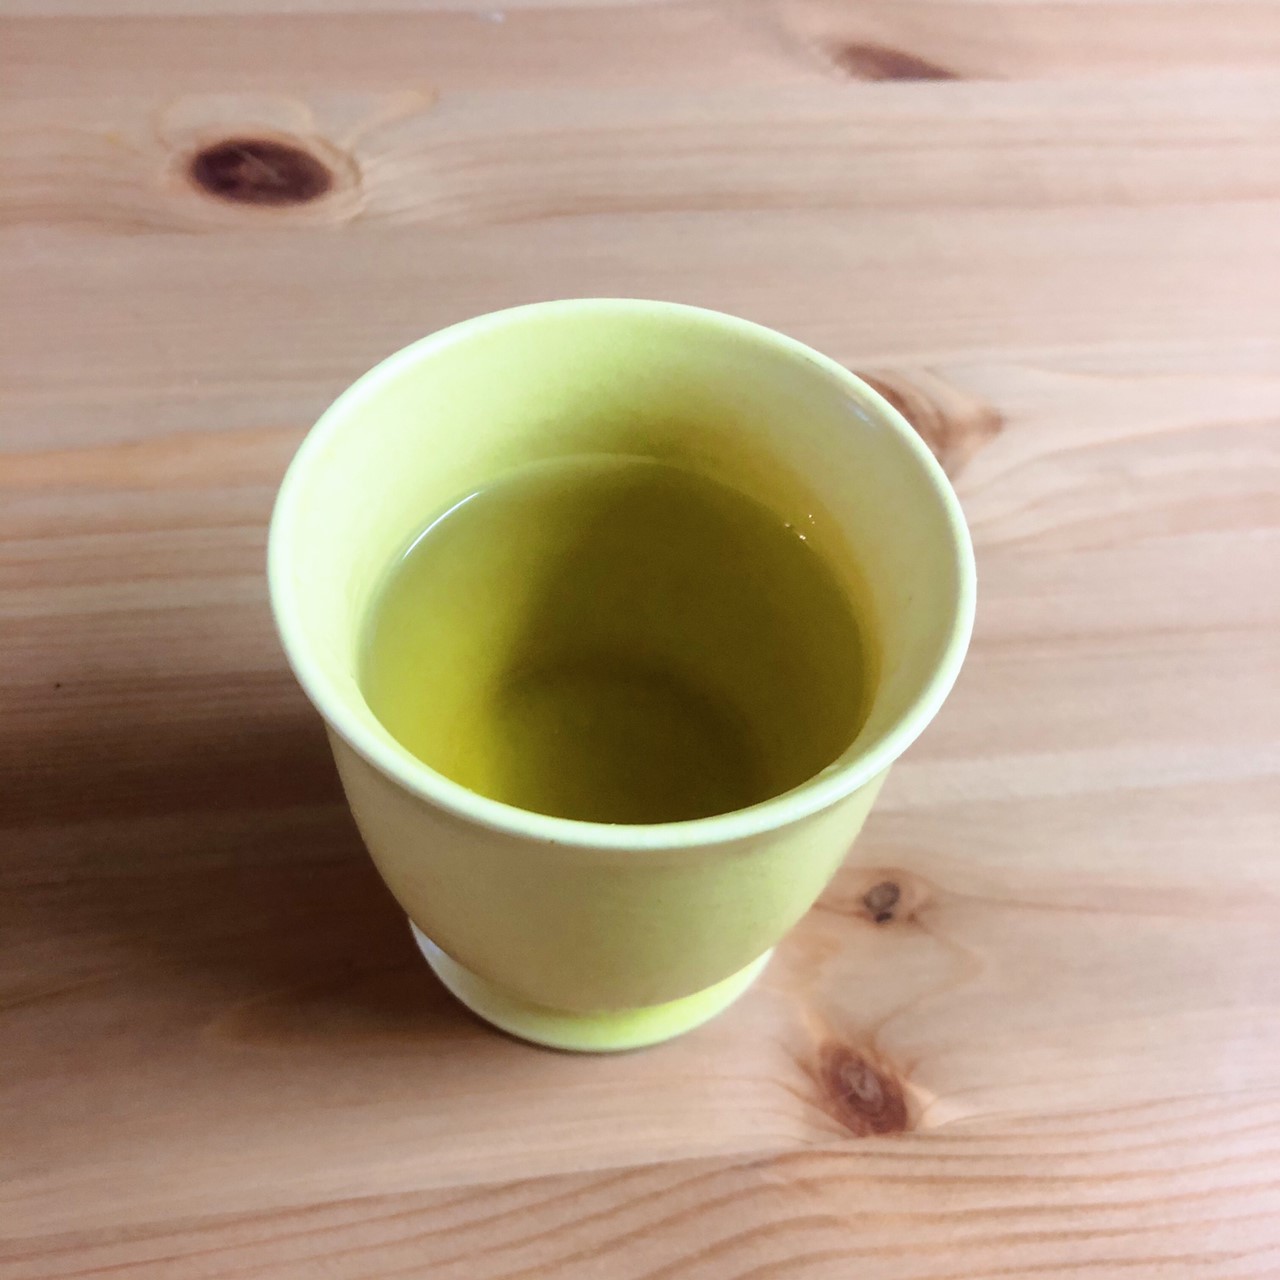 八女煎茶のグリーンに、ジャーマンカモミールの黄味がちょっと混ざったような、黄金色に近い感じ。